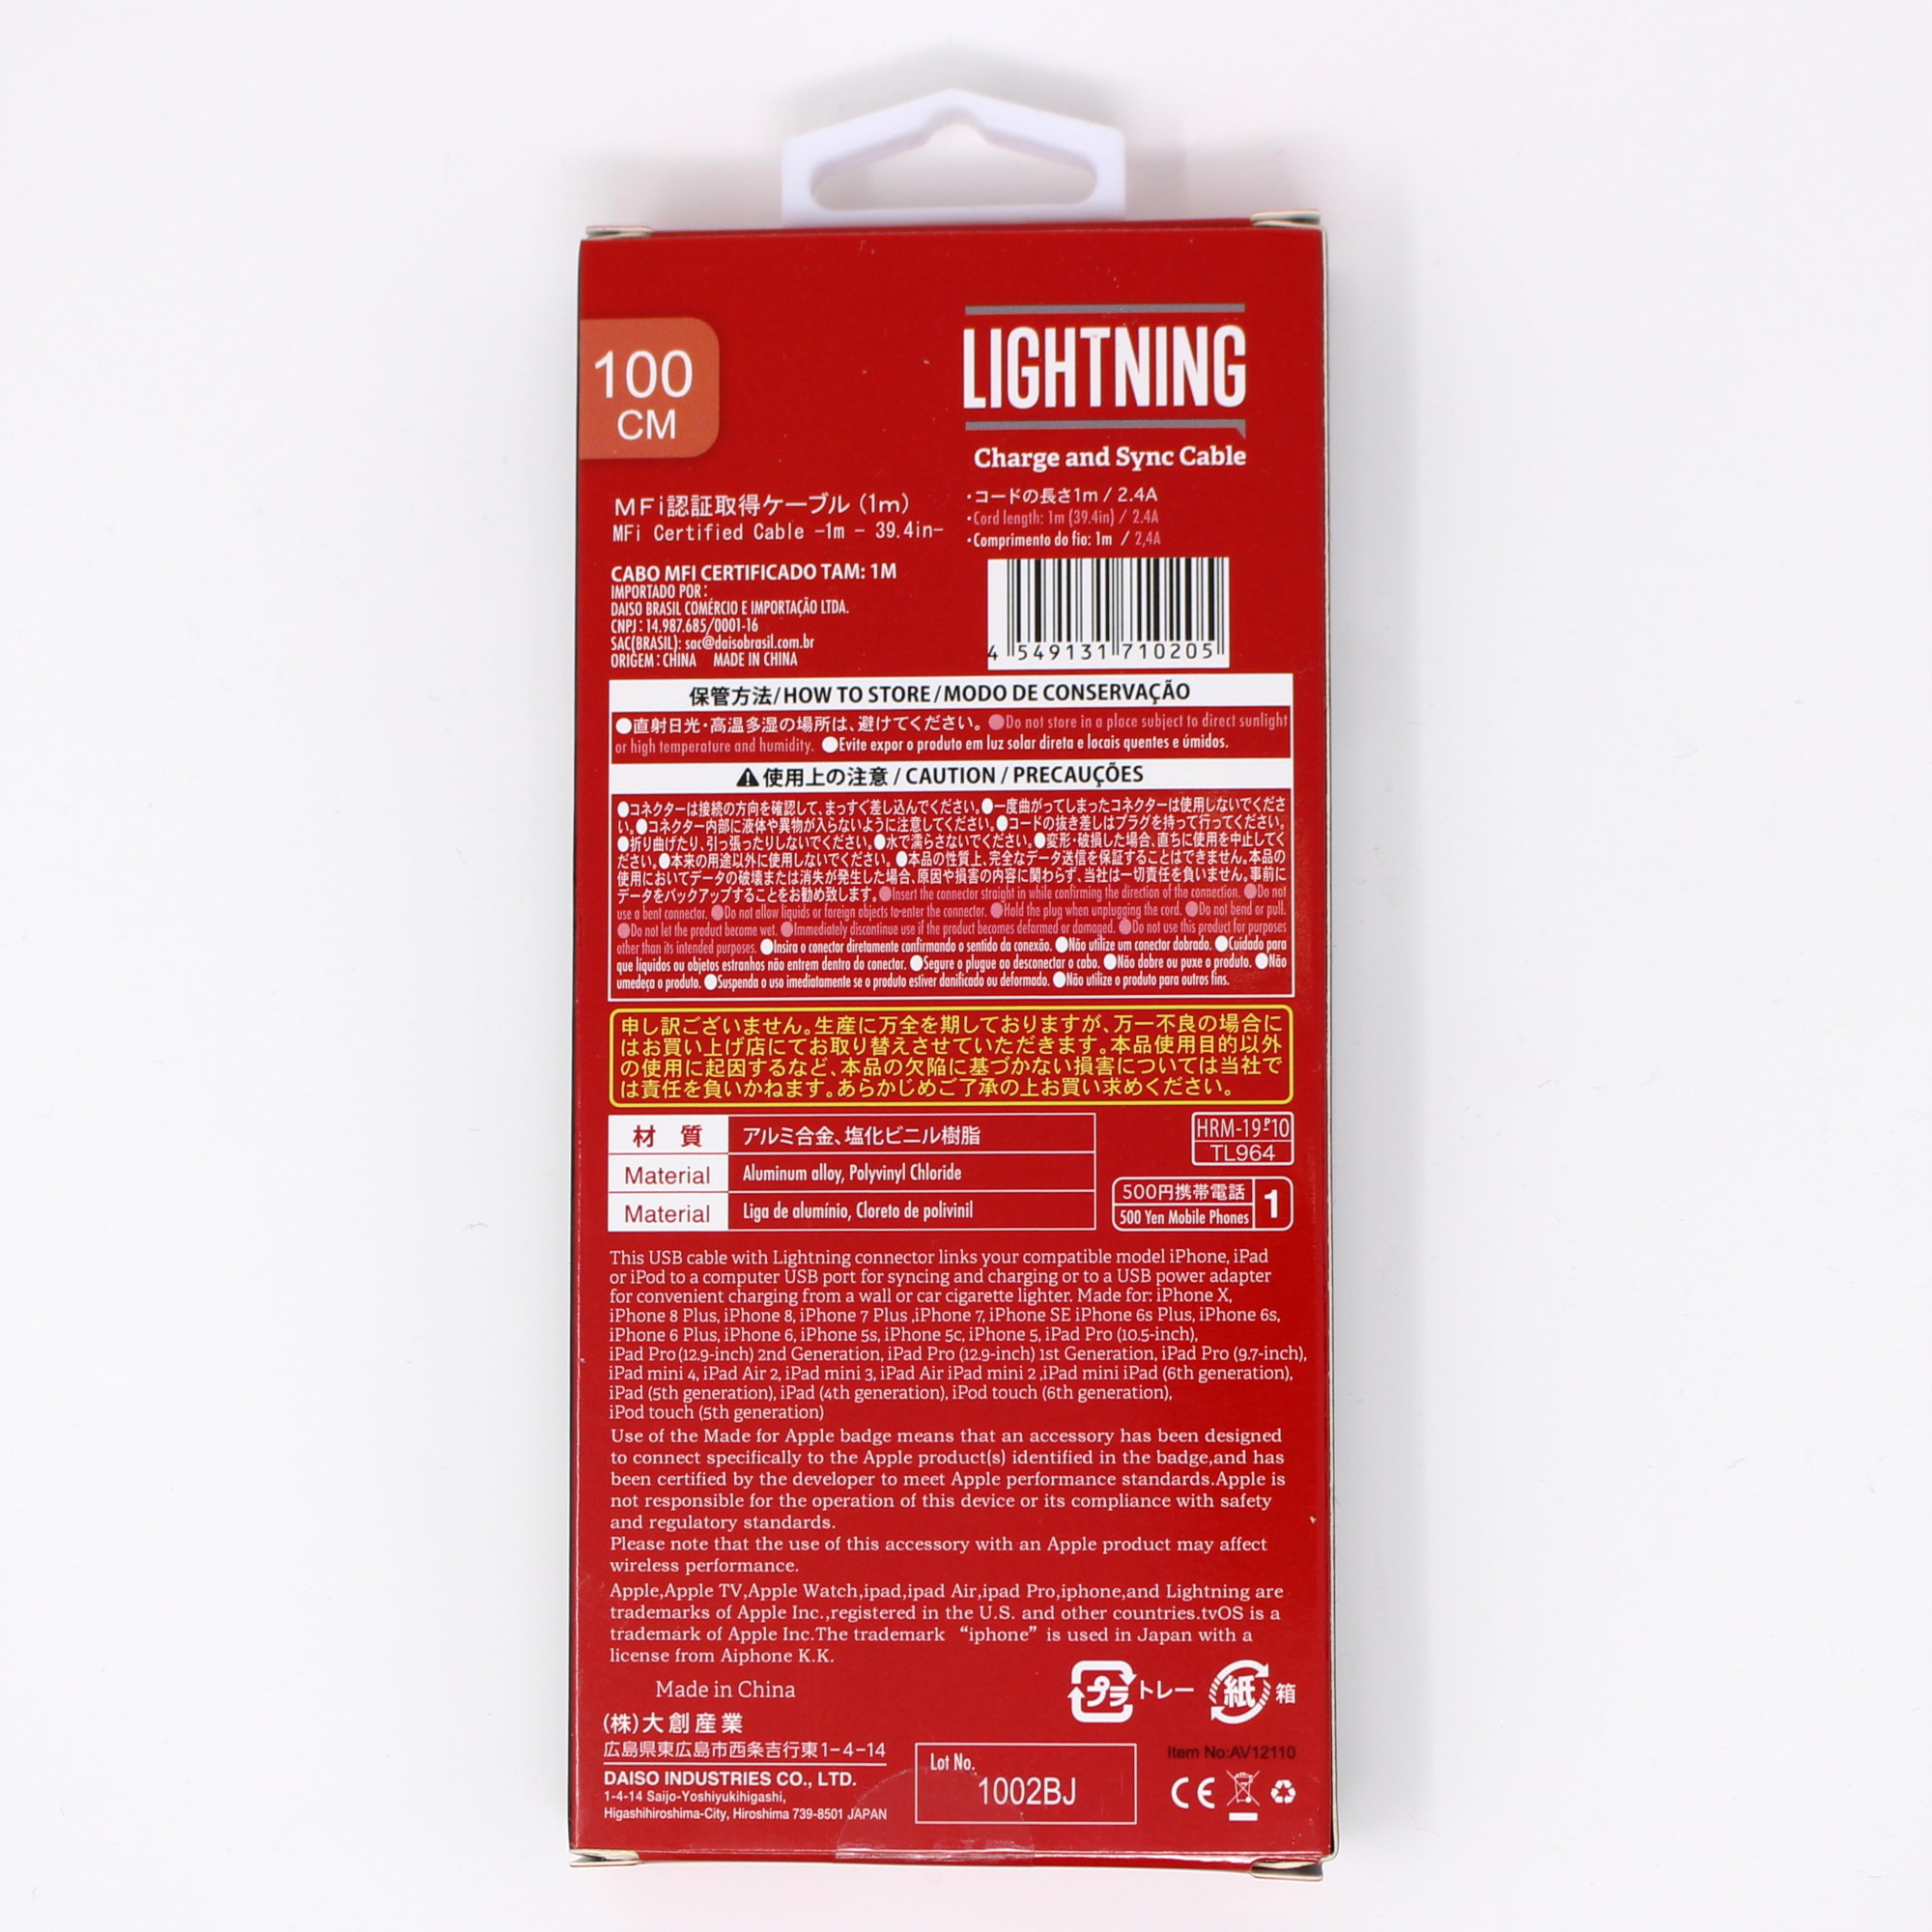 製品レビュー ダイソー 500円 Mfi認証lightningケーブルの性能を計測 Reliphone For Iphone